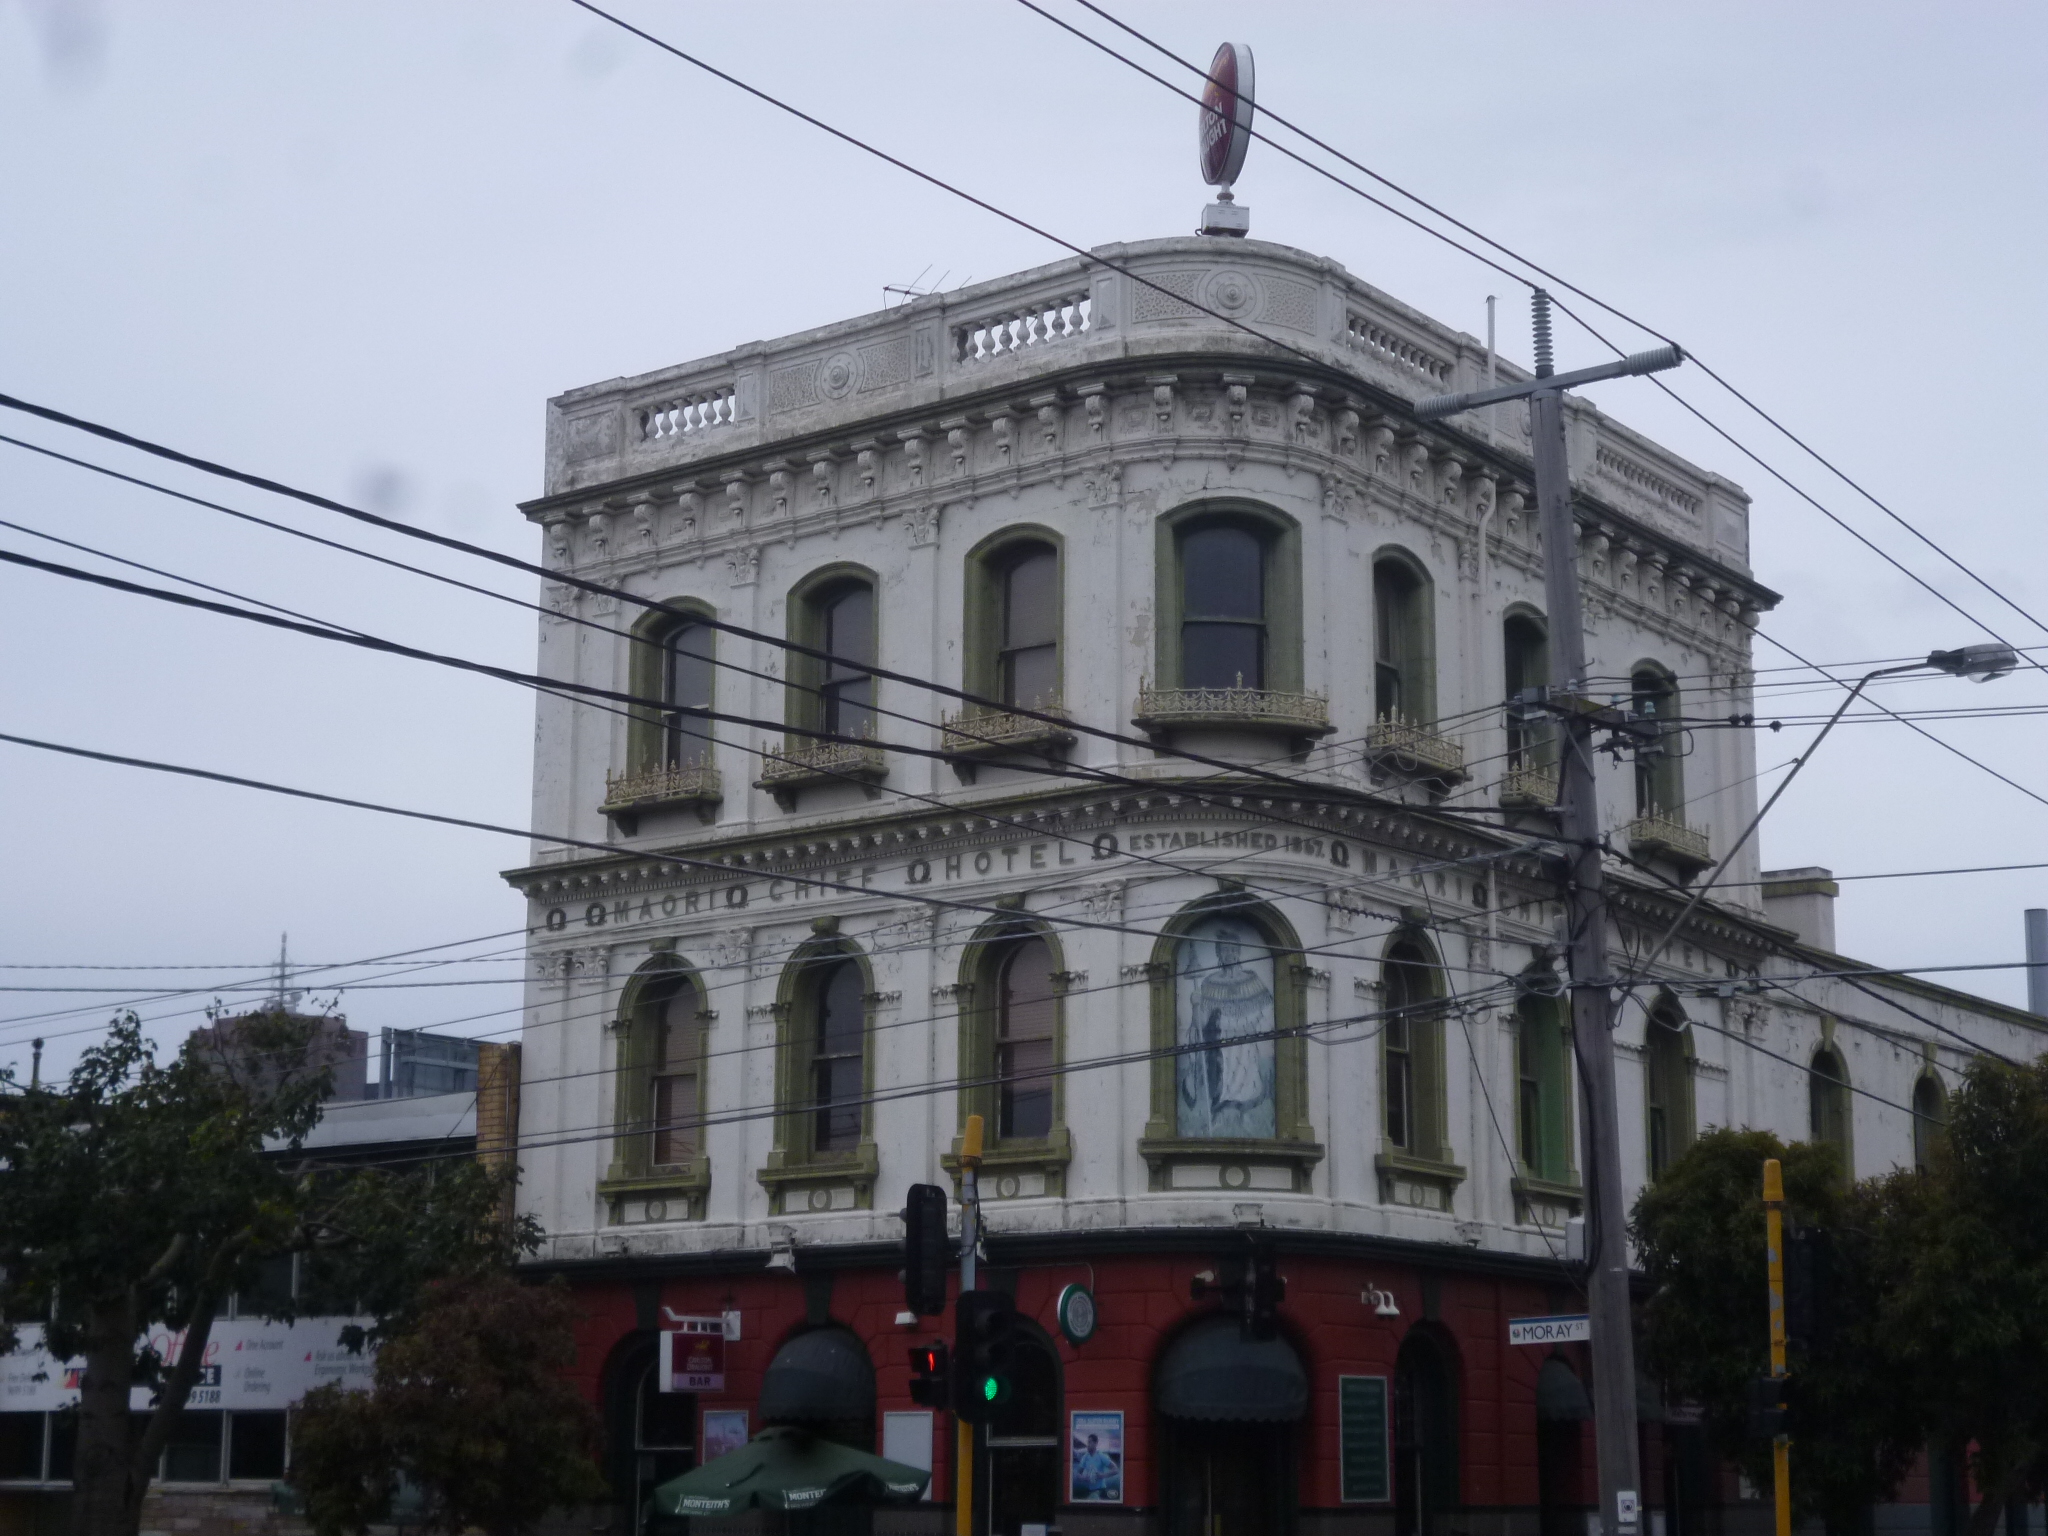 Maori Chief Hotel - Kempsey Accommodation